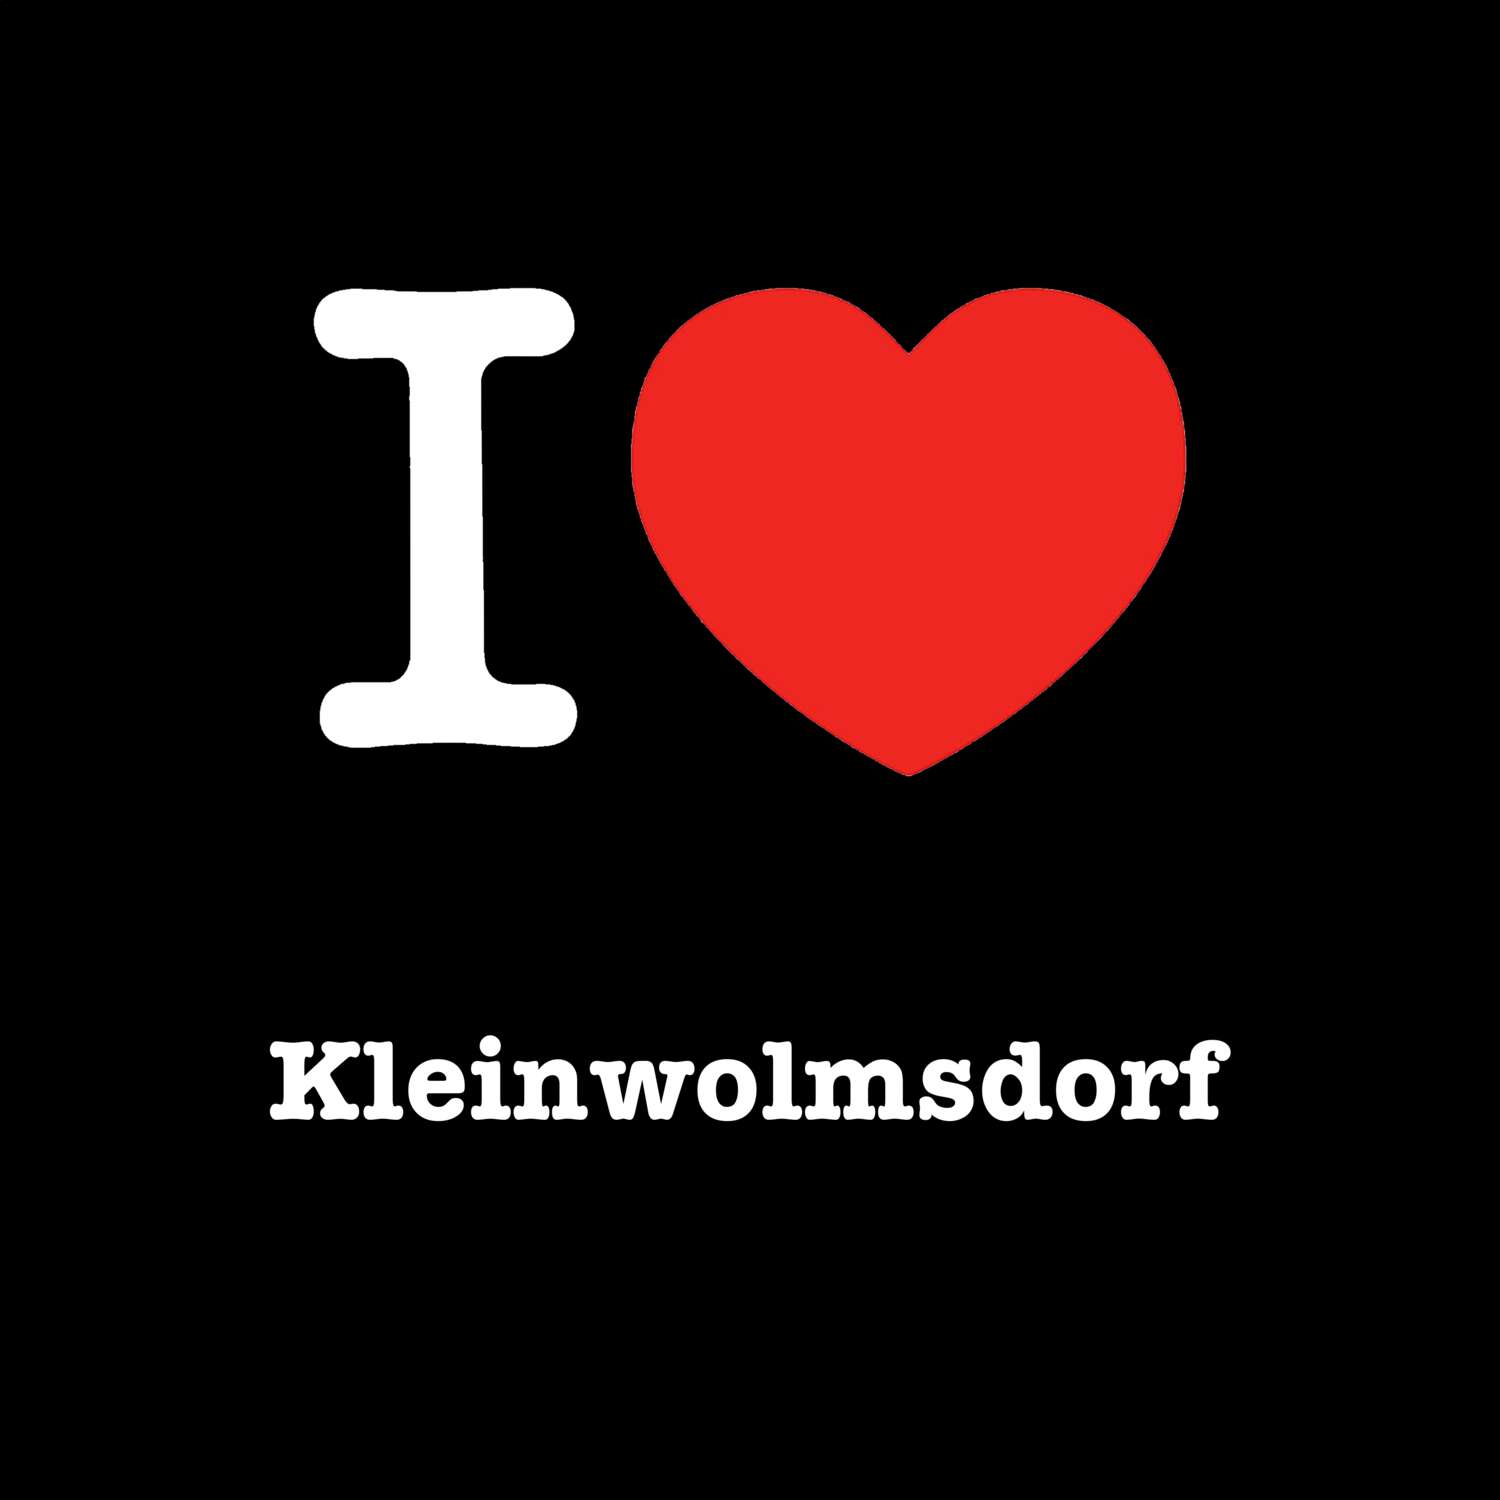 Kleinwolmsdorf T-Shirt »I love«